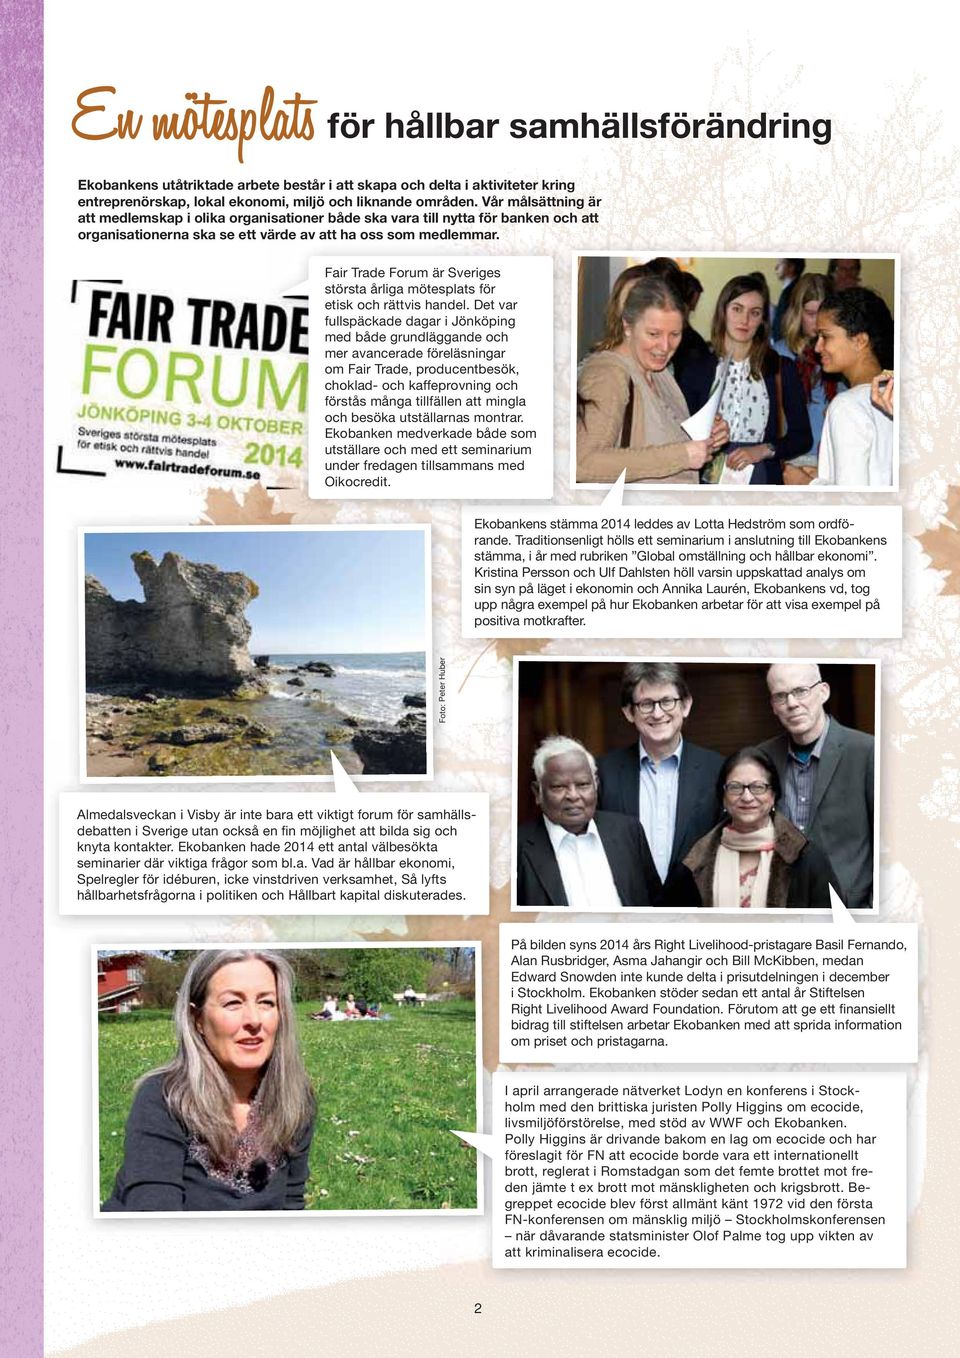 Fair Trade Forum är Sveriges största årliga mötesplats för etisk och rättvis handel.